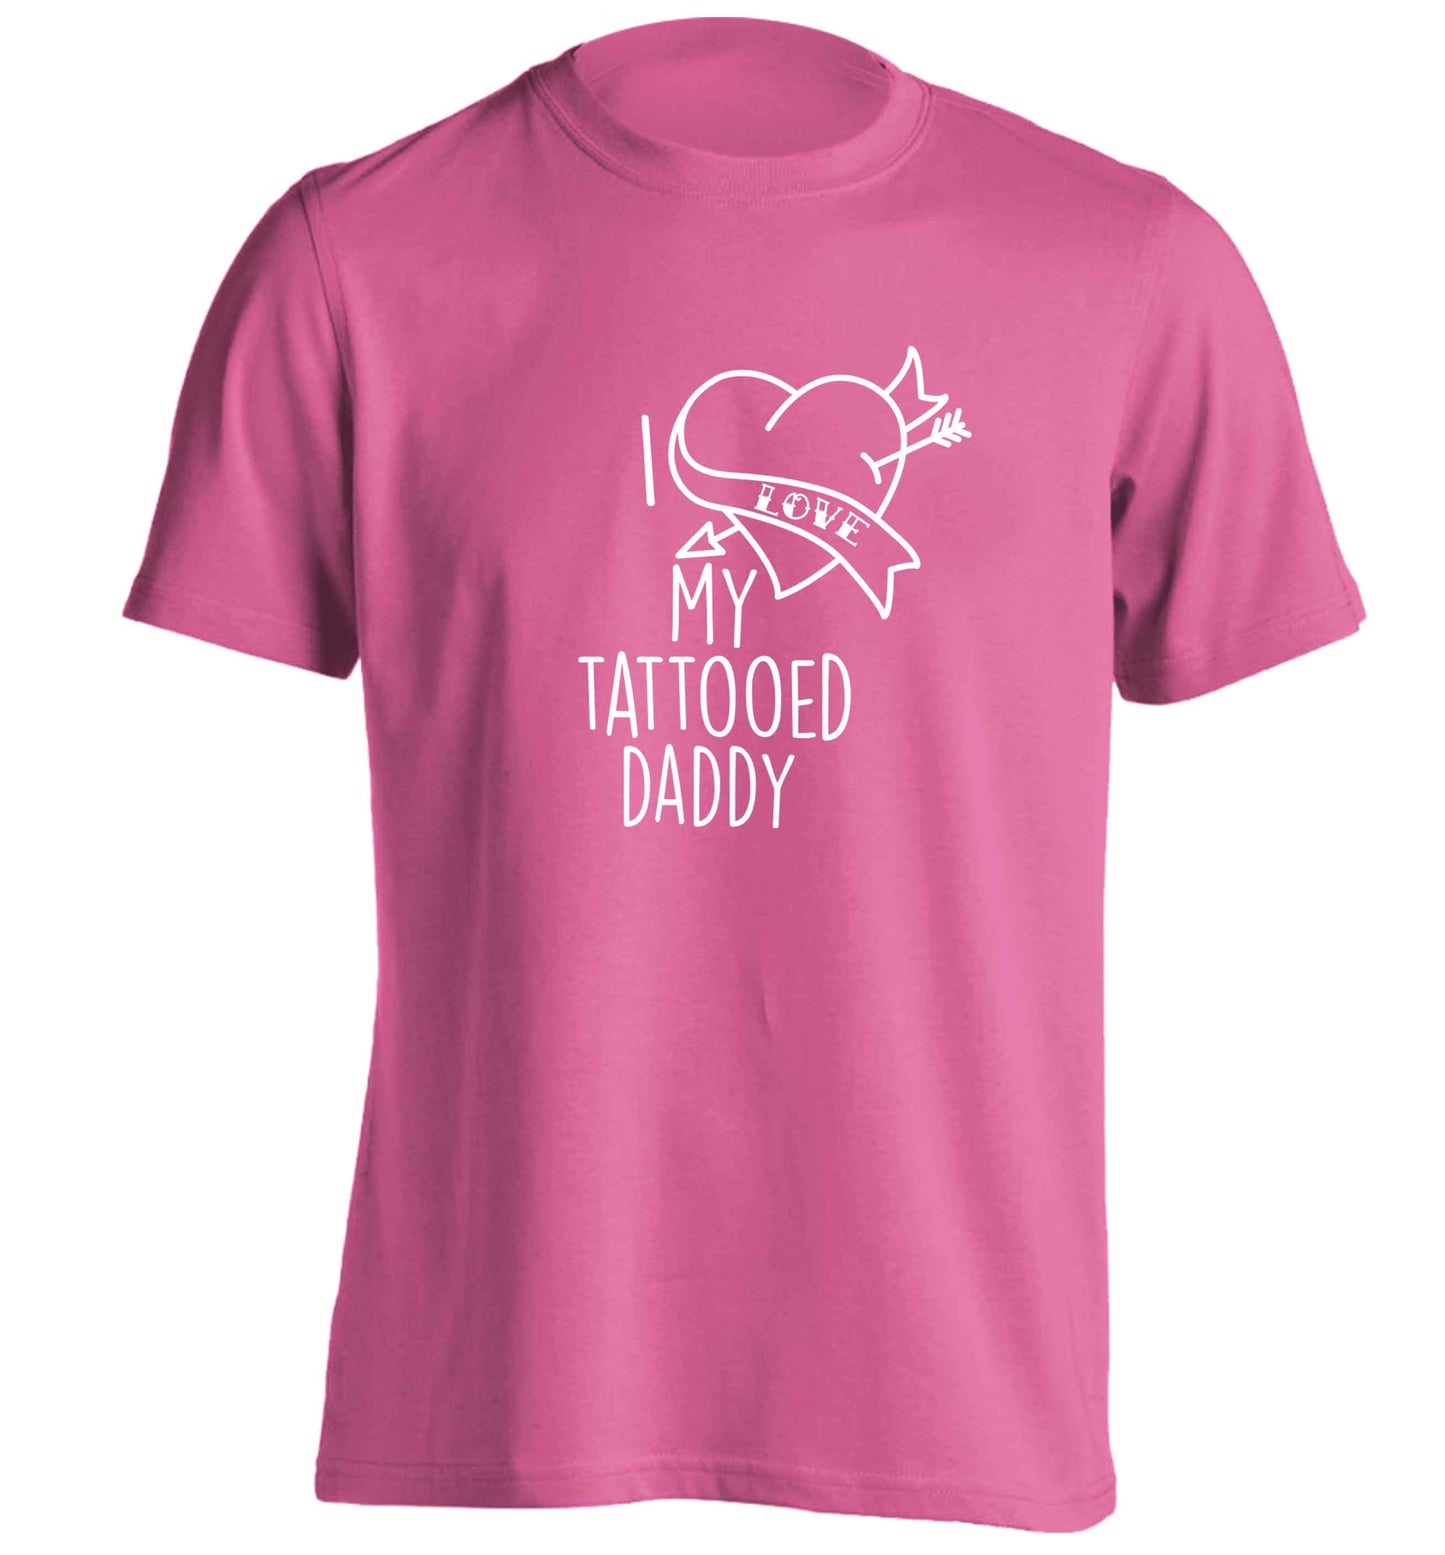 I love my tattooed daddy adults unisex pink Tshirt 2XL